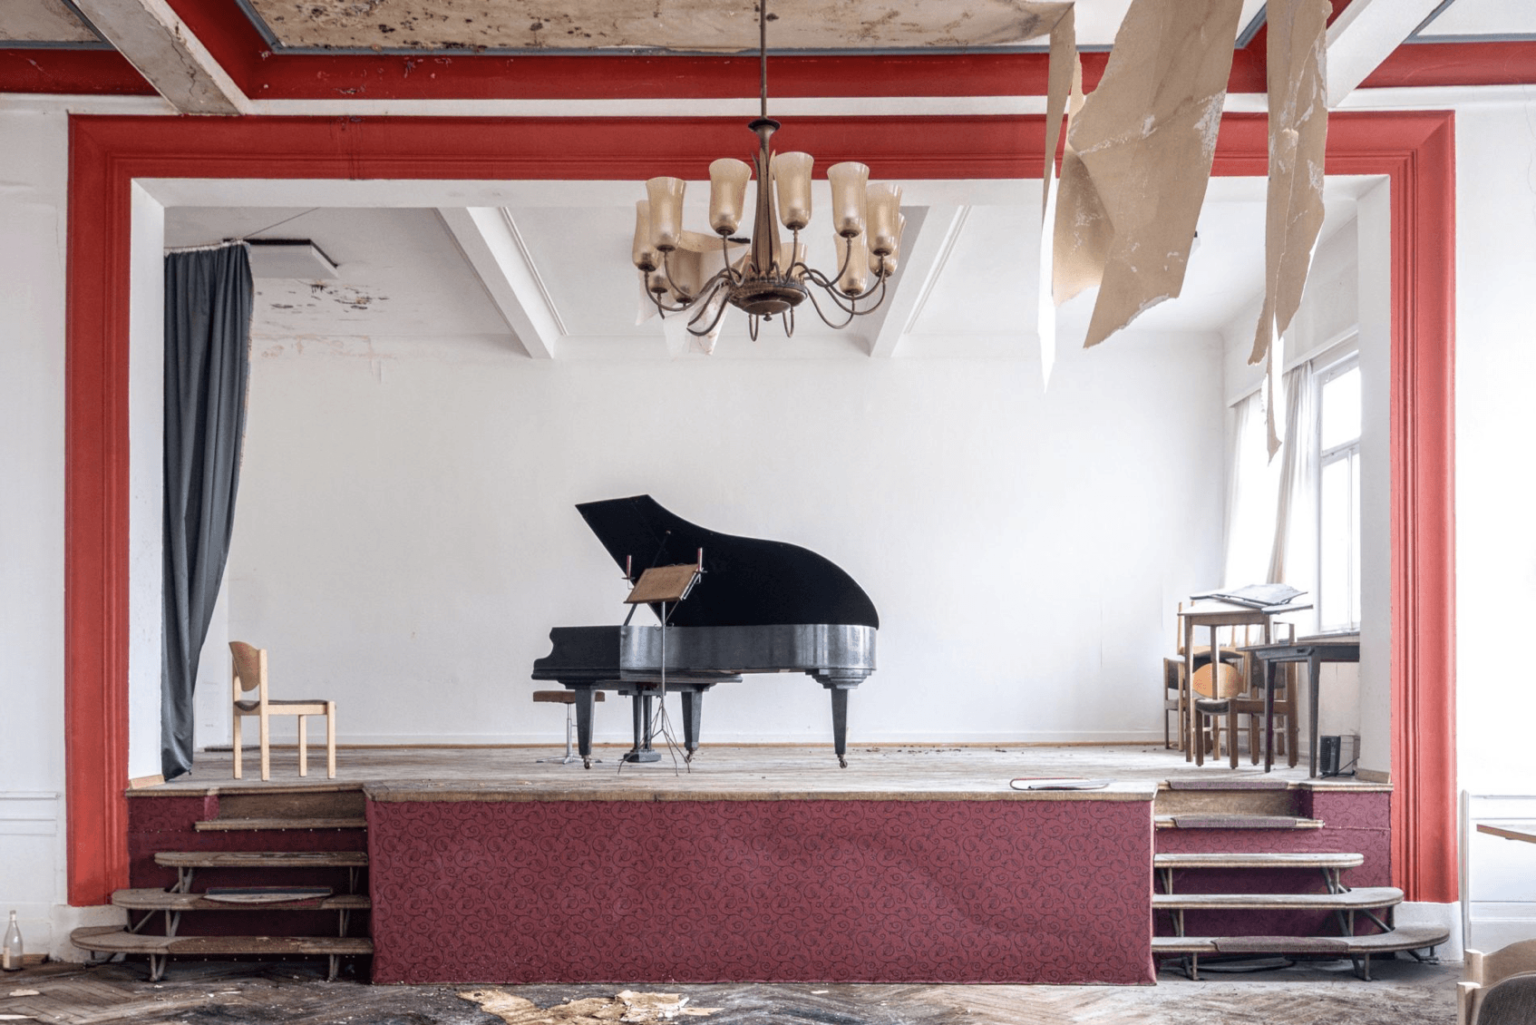 Photographie réalisée par Romain Thierry illustrant un piano sur une scène